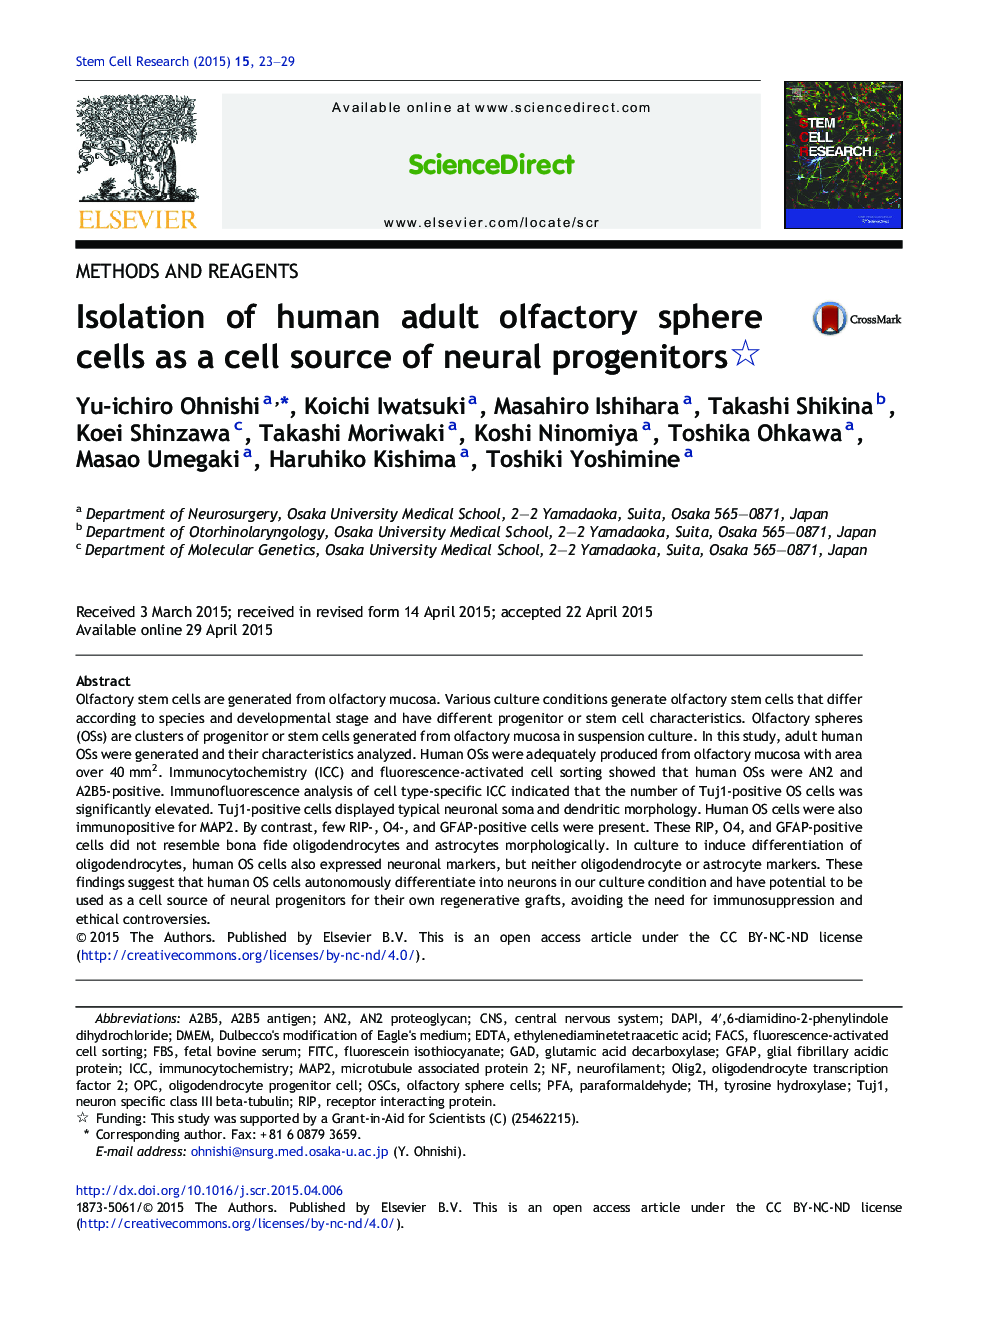 جداسازی سلول های کروی بویای بالغ انسان به عنوان یک منبع سلول پیش سازهای عصبی 